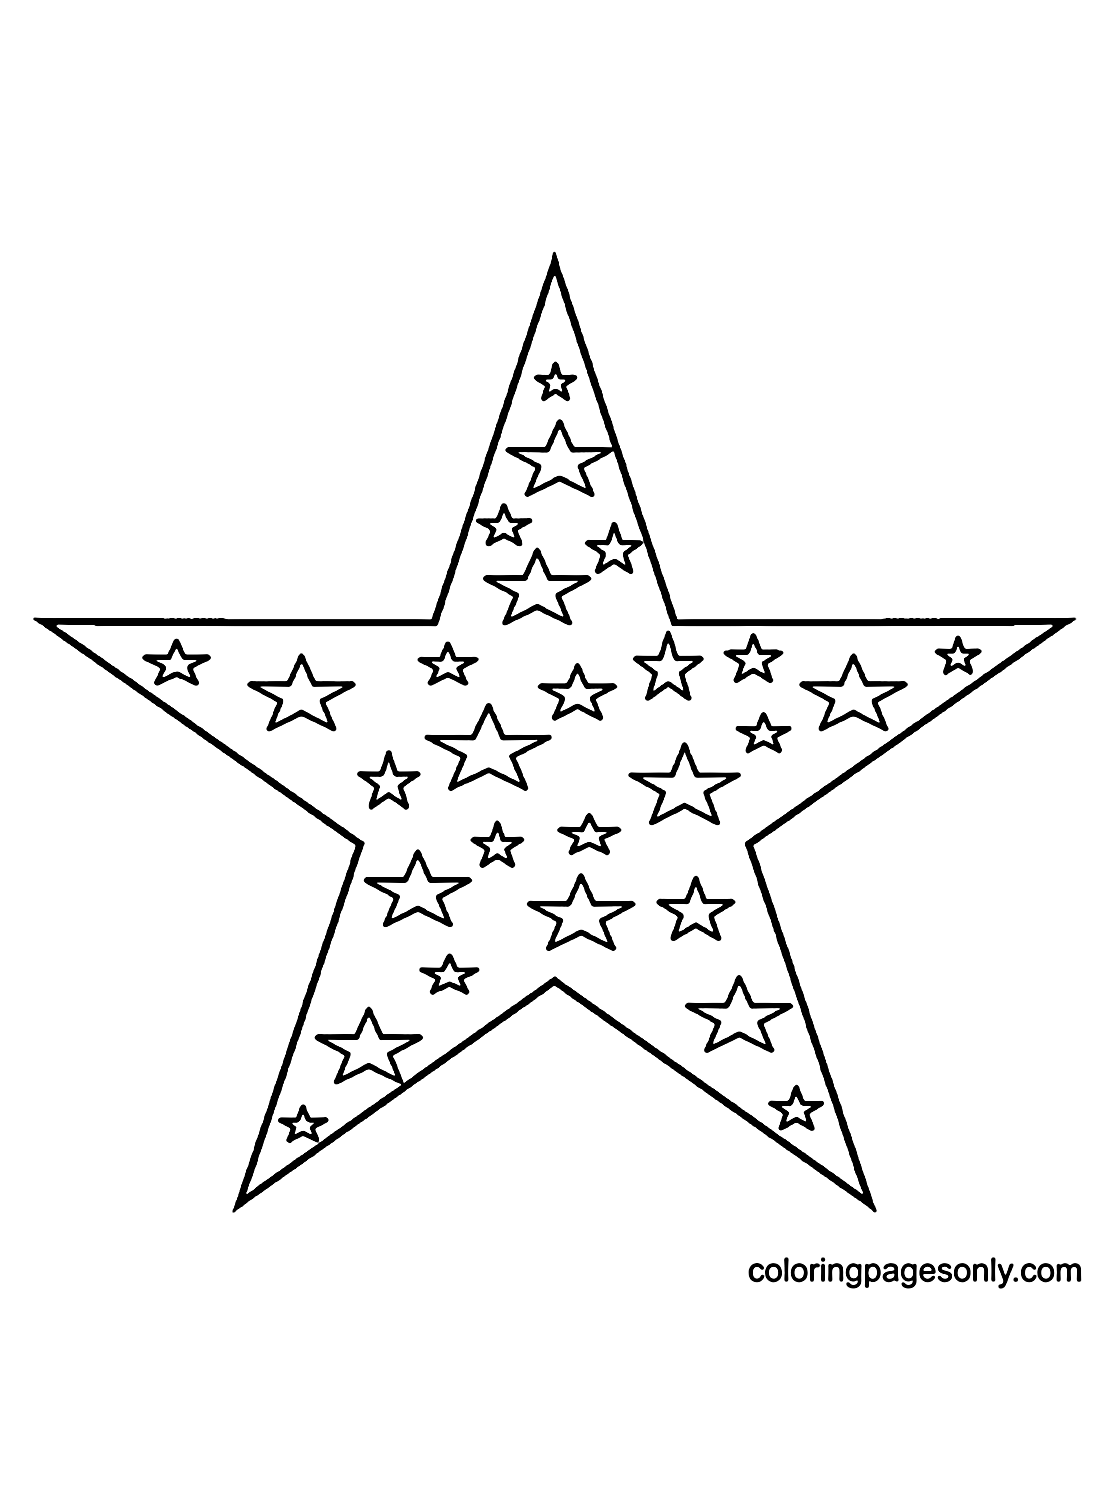 Ein großer Stern und kleine Sterne im Inneren von Star